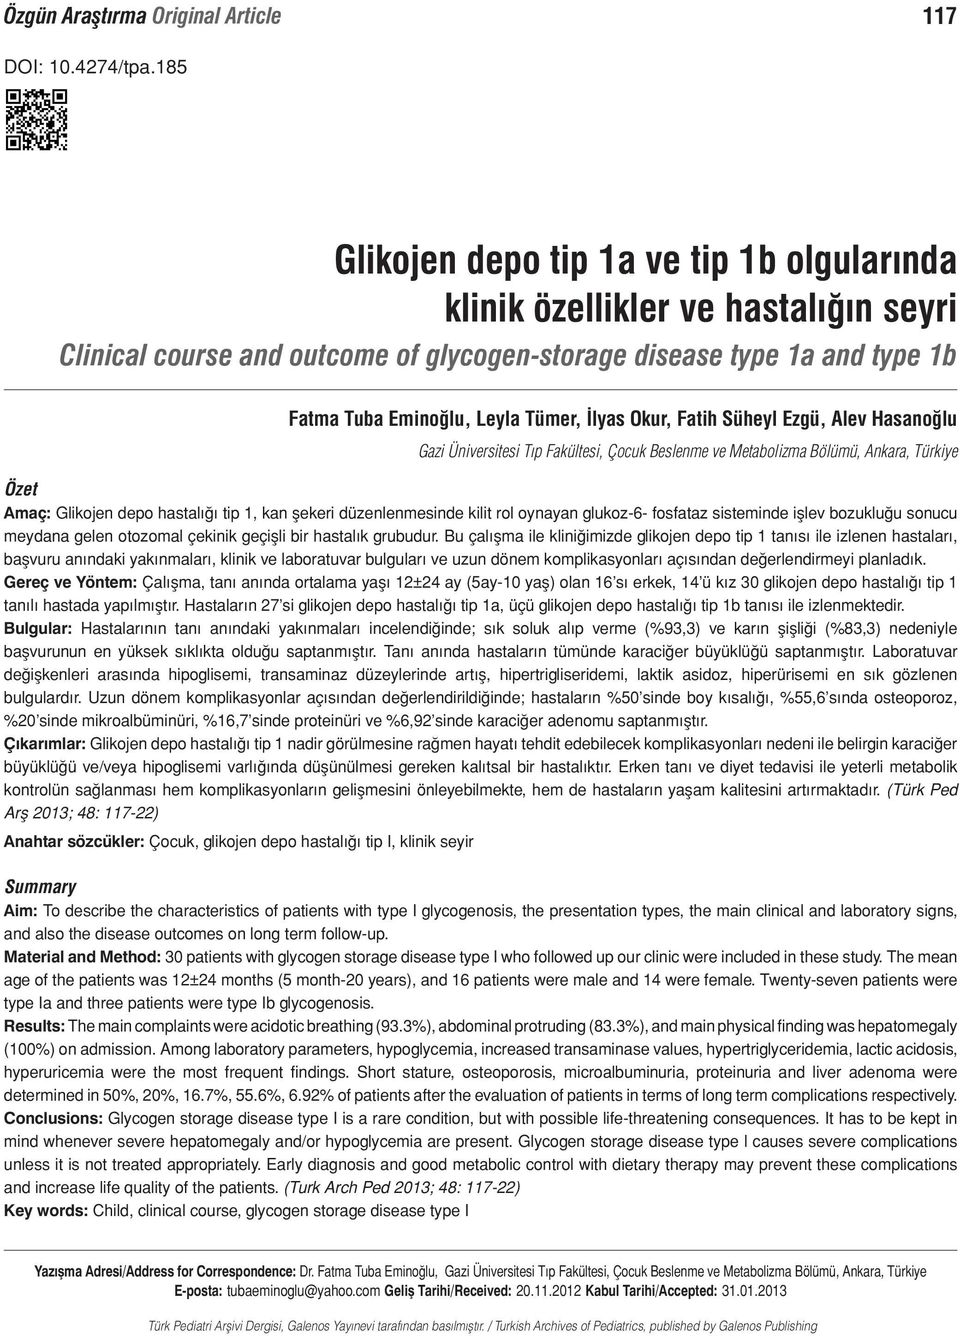 Çocuk Beslenme ve Metabolizma Bölümü, Ankara, Türkiye Özet Amaç: Glikojen depo hastalığı tip 1, kan şekeri düzenlenmesinde kilit rol oynayan glukoz-6- fosfataz sisteminde işlev bozukluğu sonucu